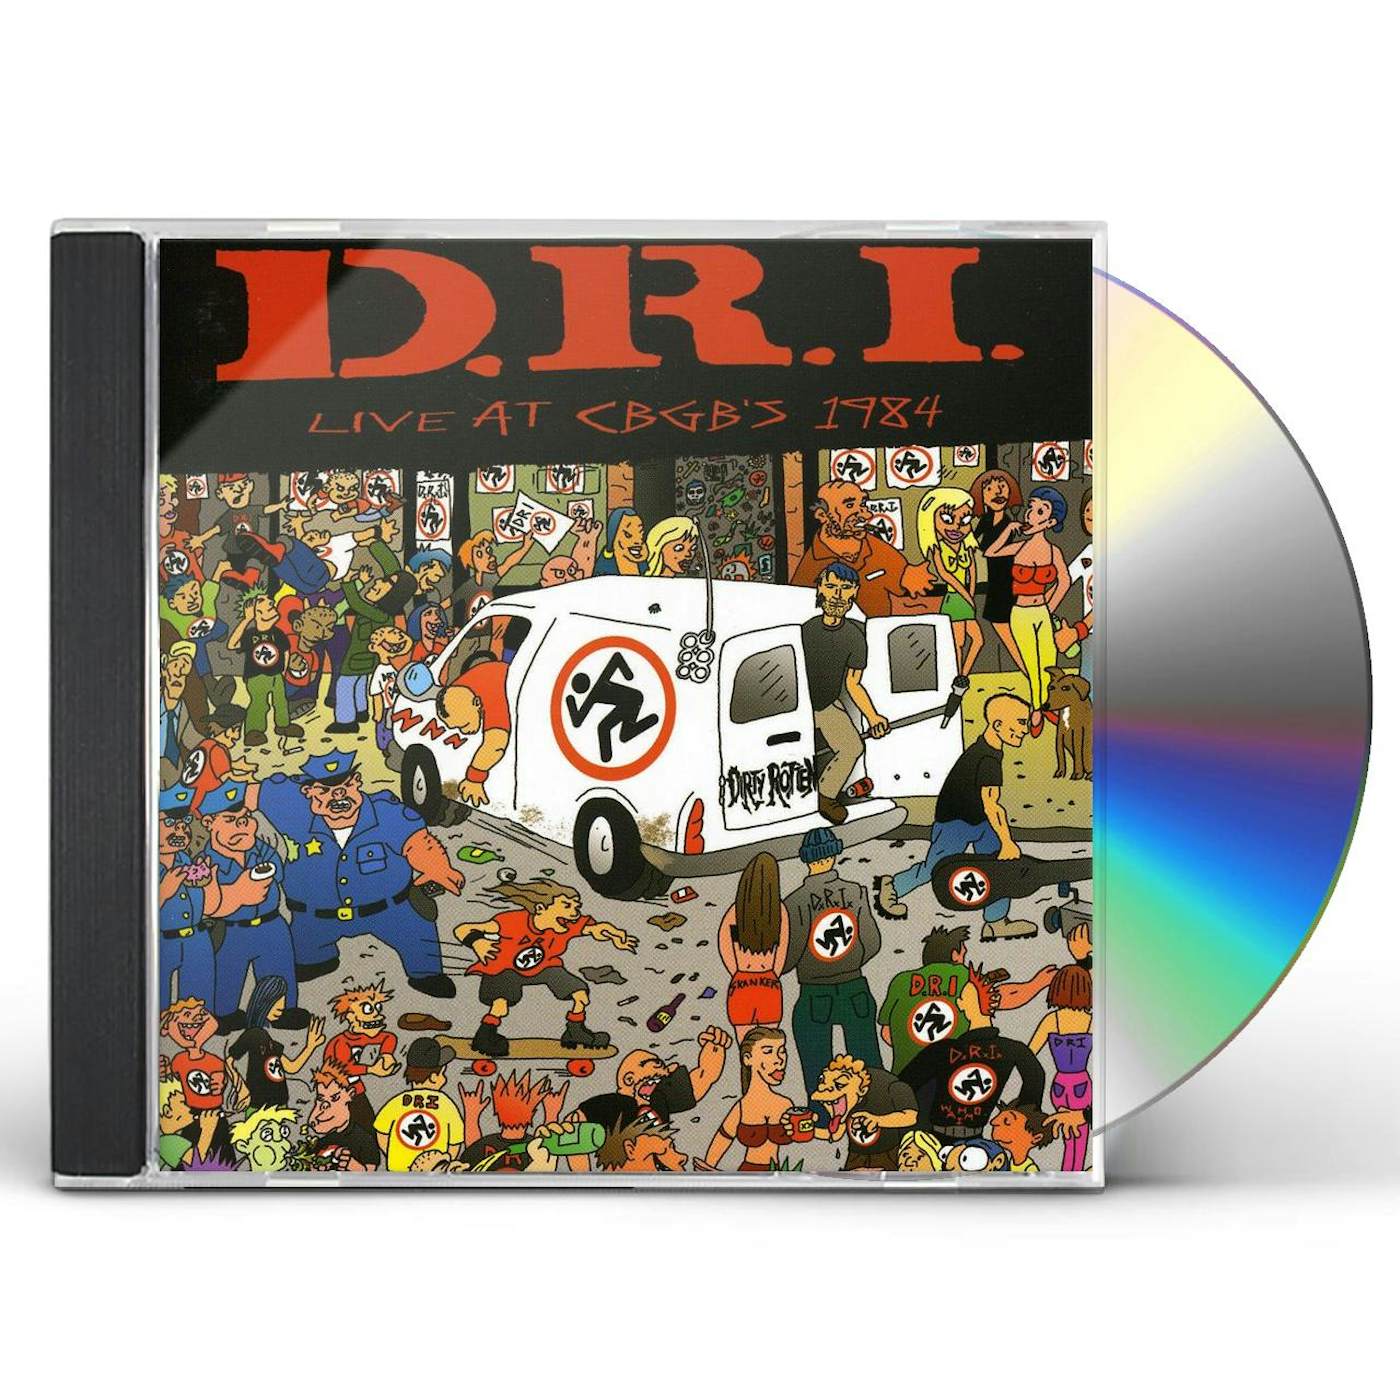 D.R.I. LIVE AT CBGB'S 1984 CD